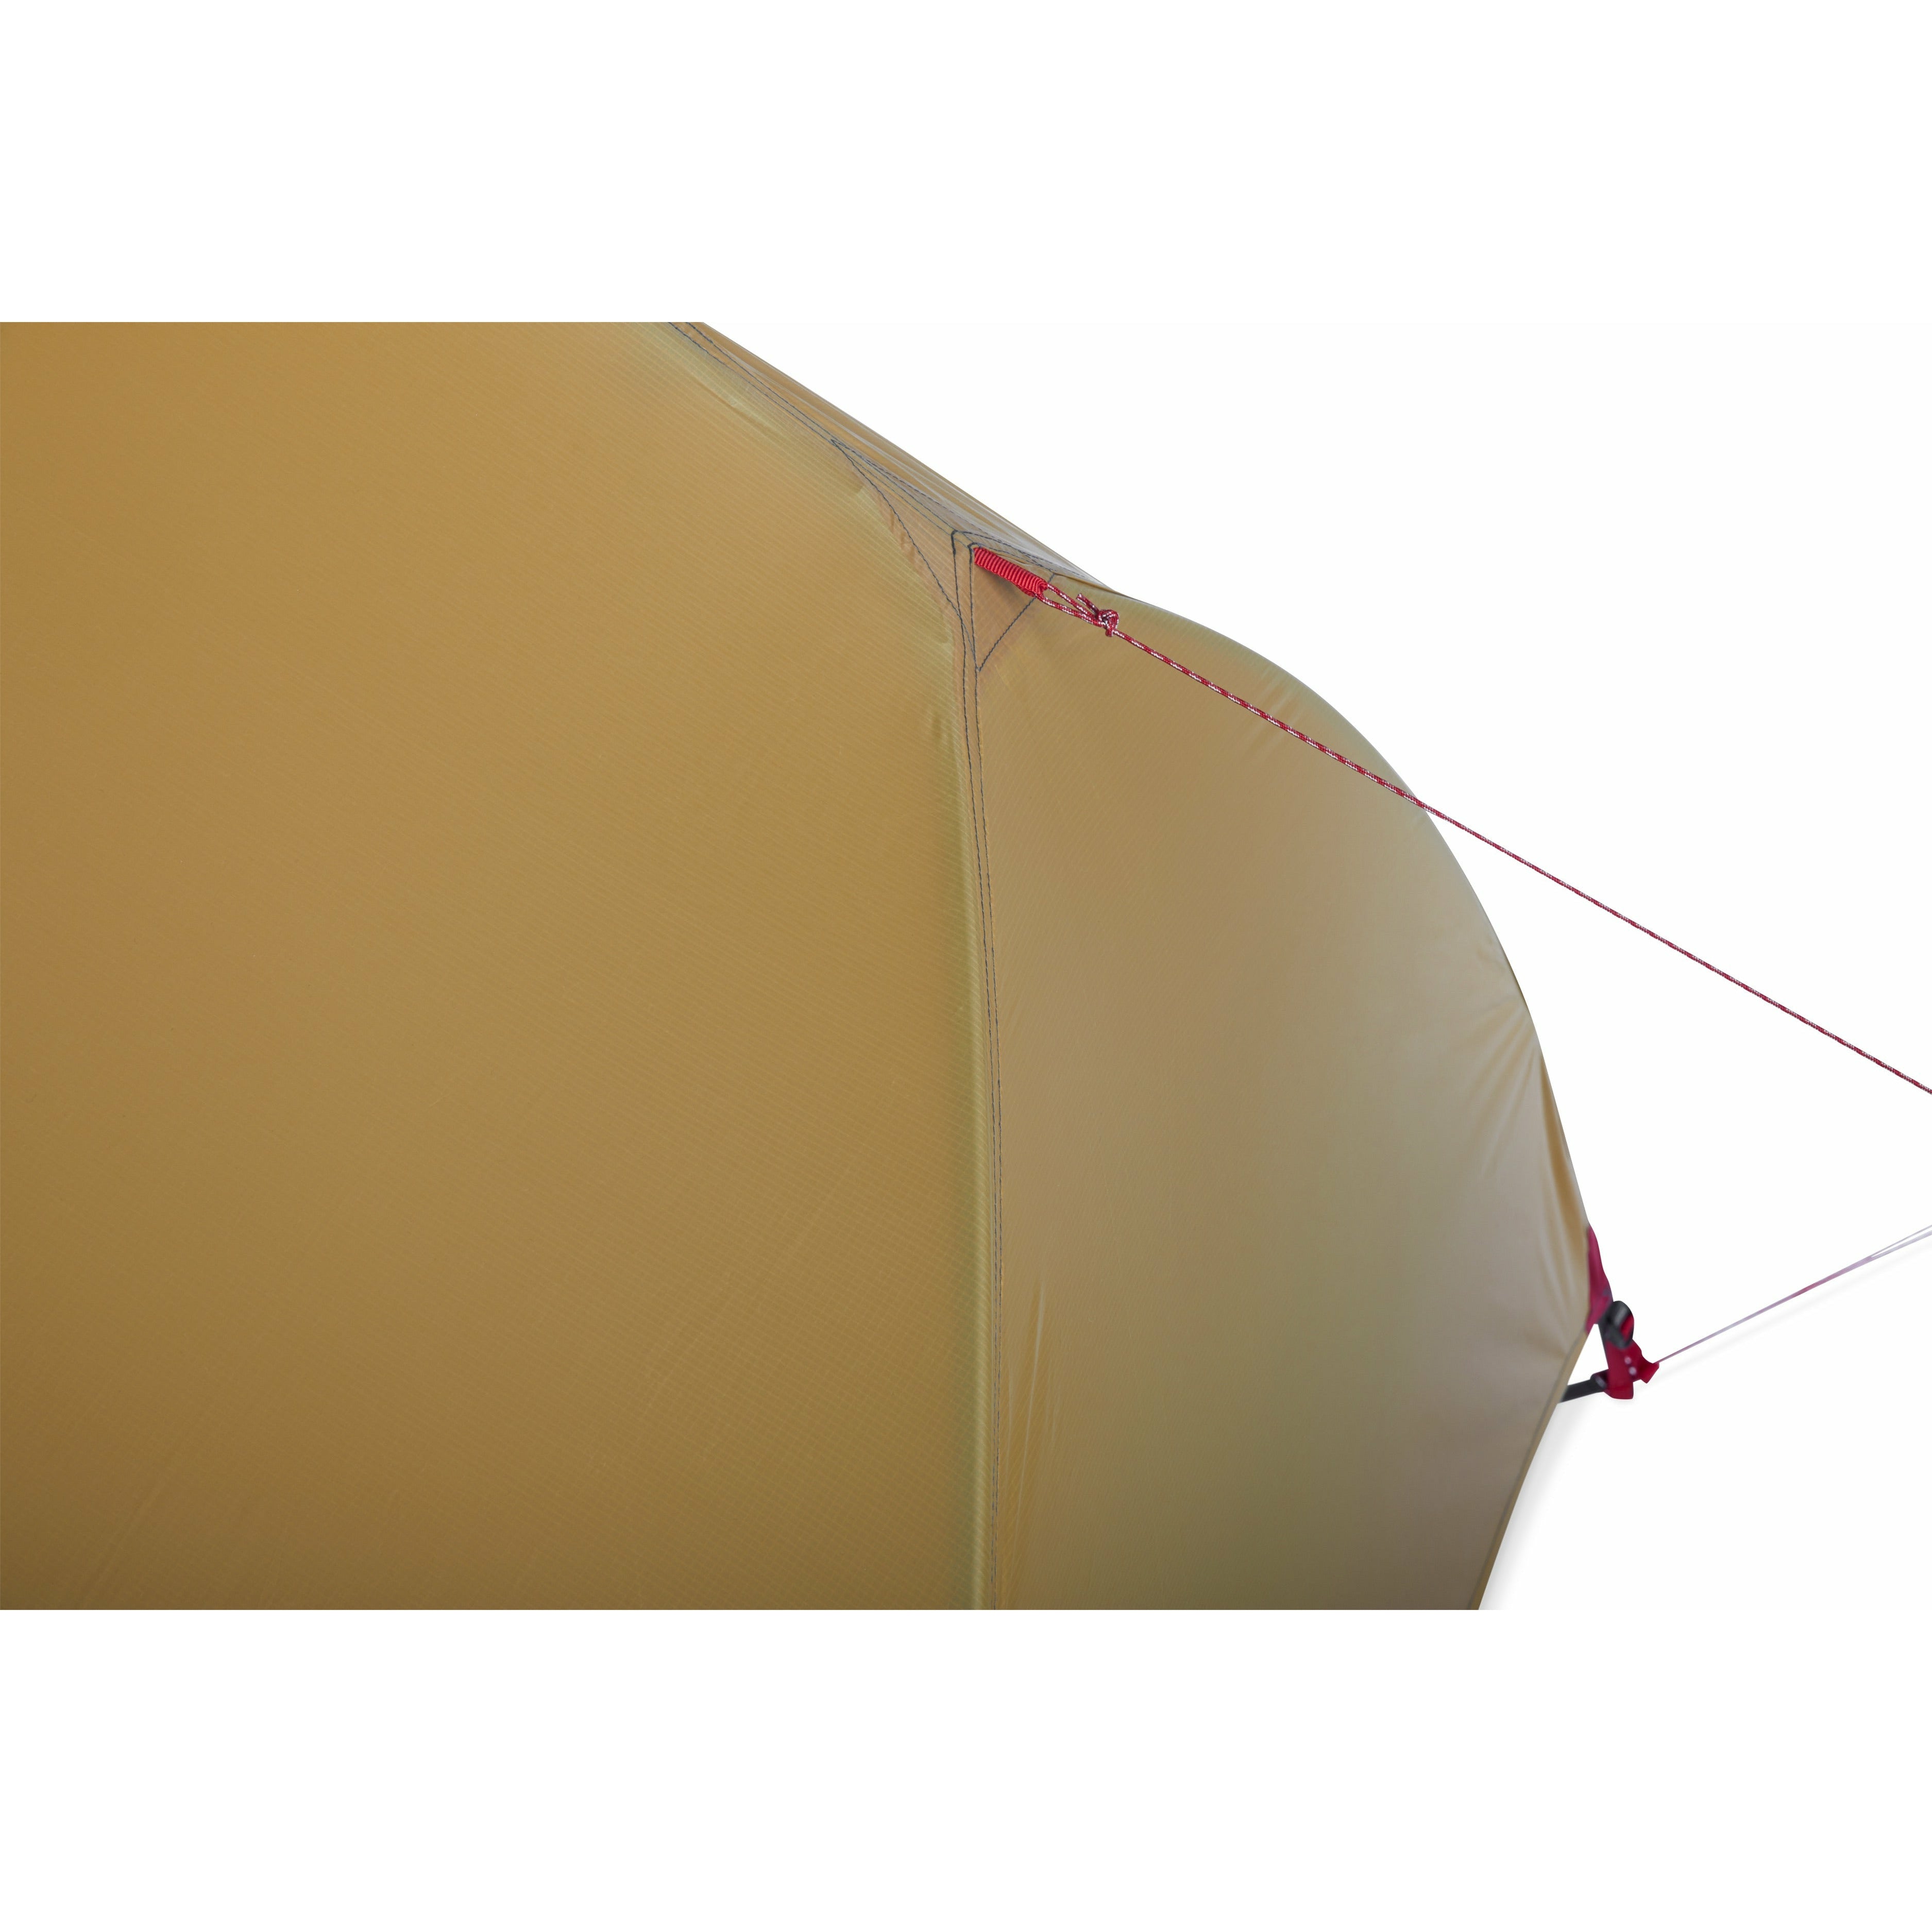 Hubba Hubba 3 - אוהל תרמילאים אולטראלייט לשלושה אנשים דגם 2022